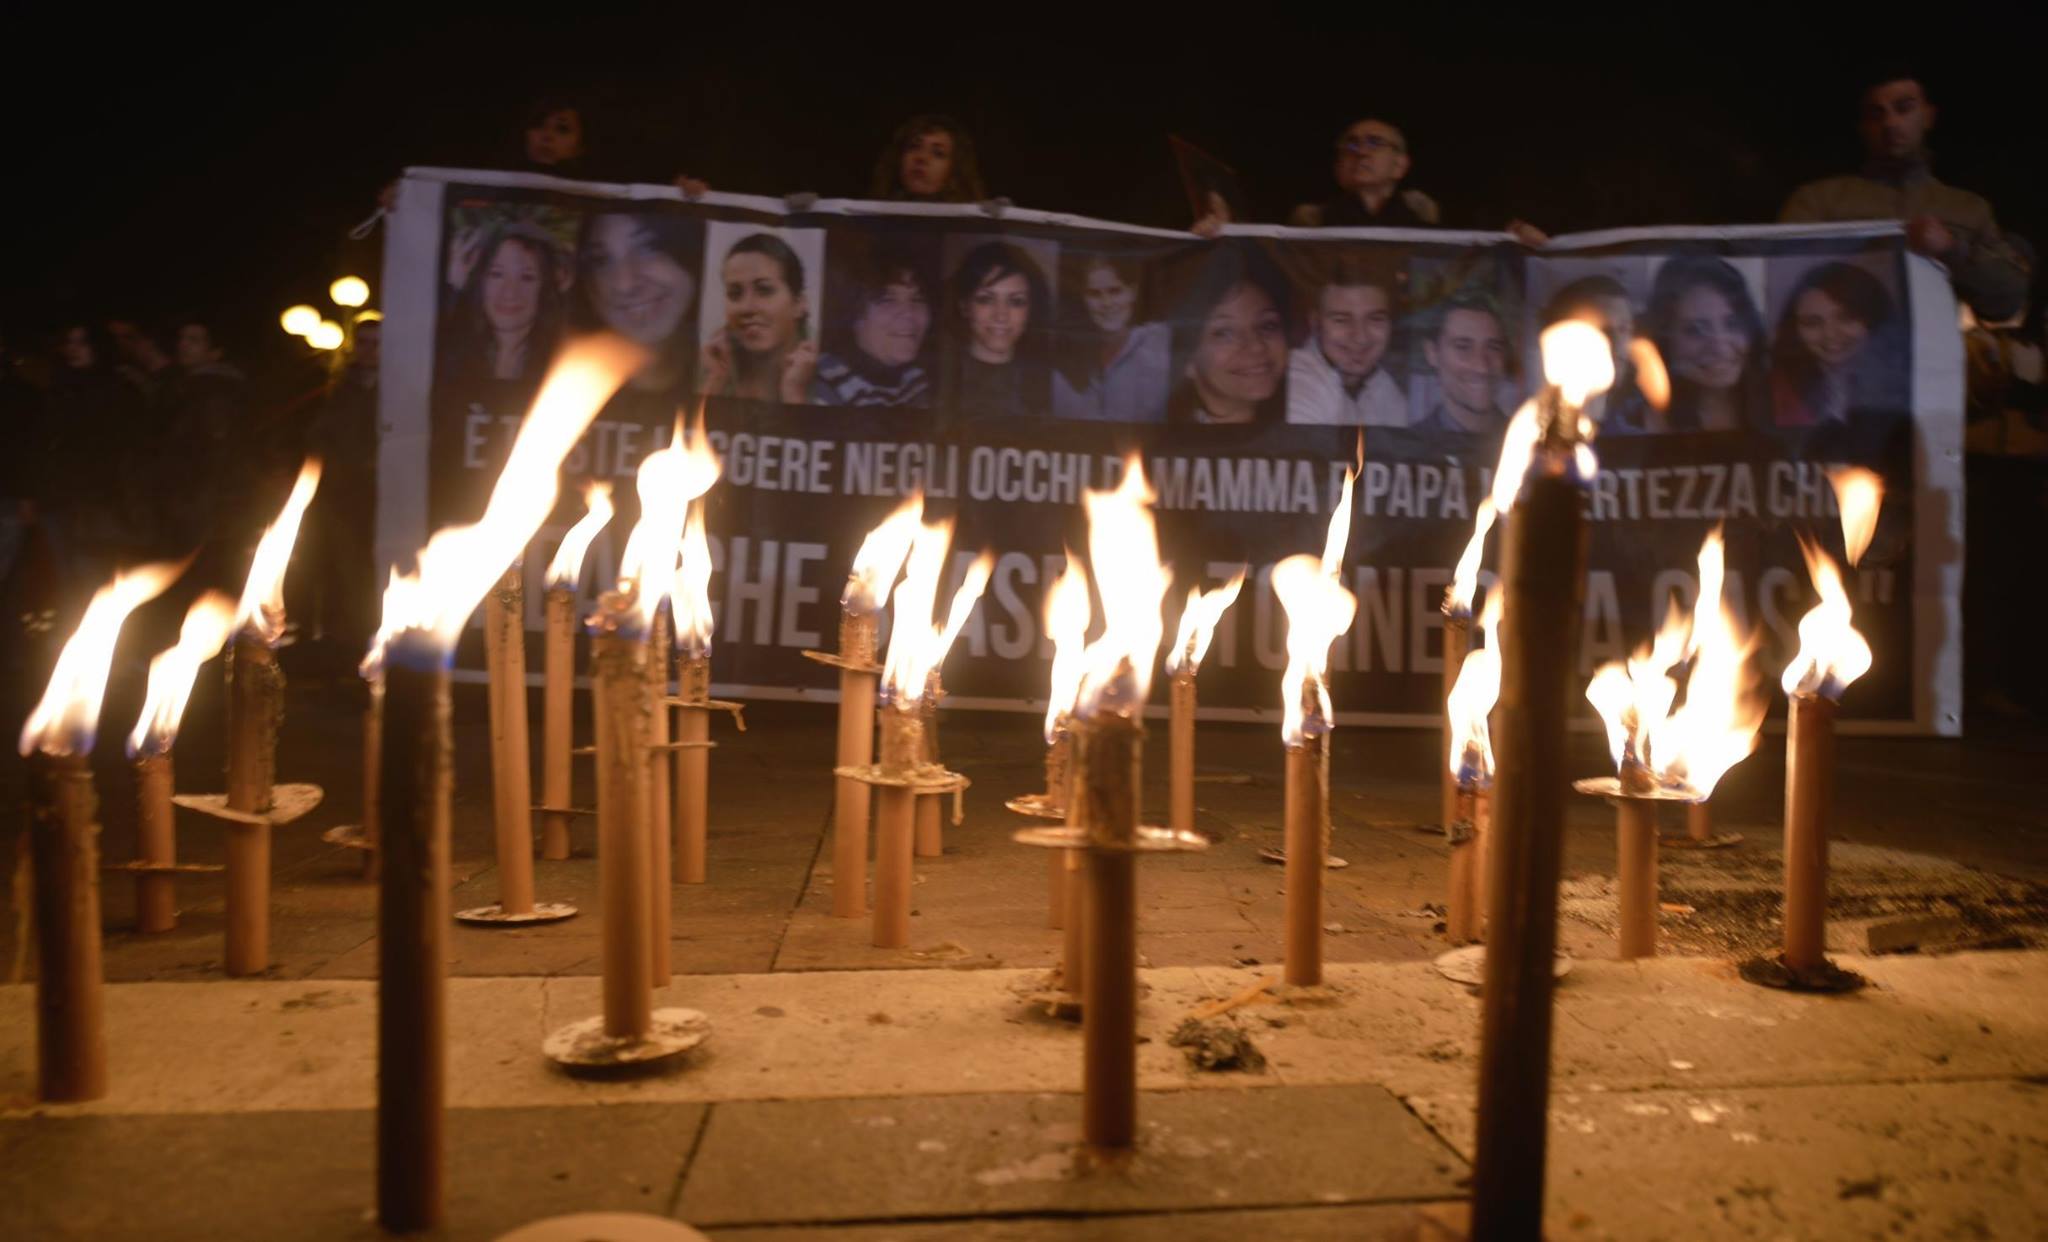 Sisma L'Aquila: la fiaccolata in ricordo delle vittime dedicata anche alle popolazioni turche e siriane